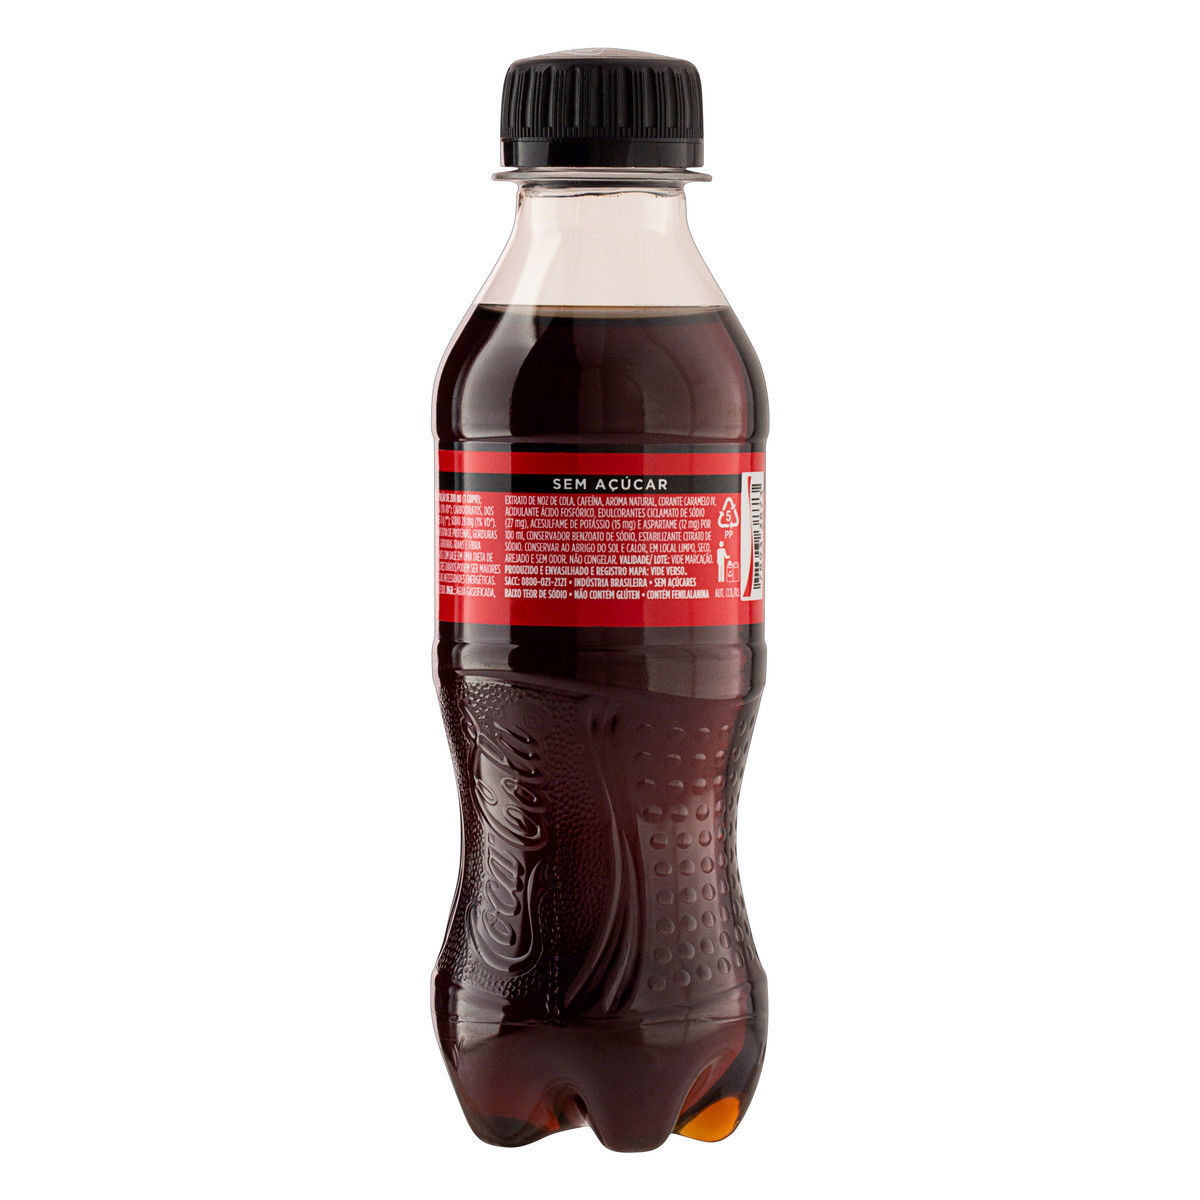 Coca cola mini cero